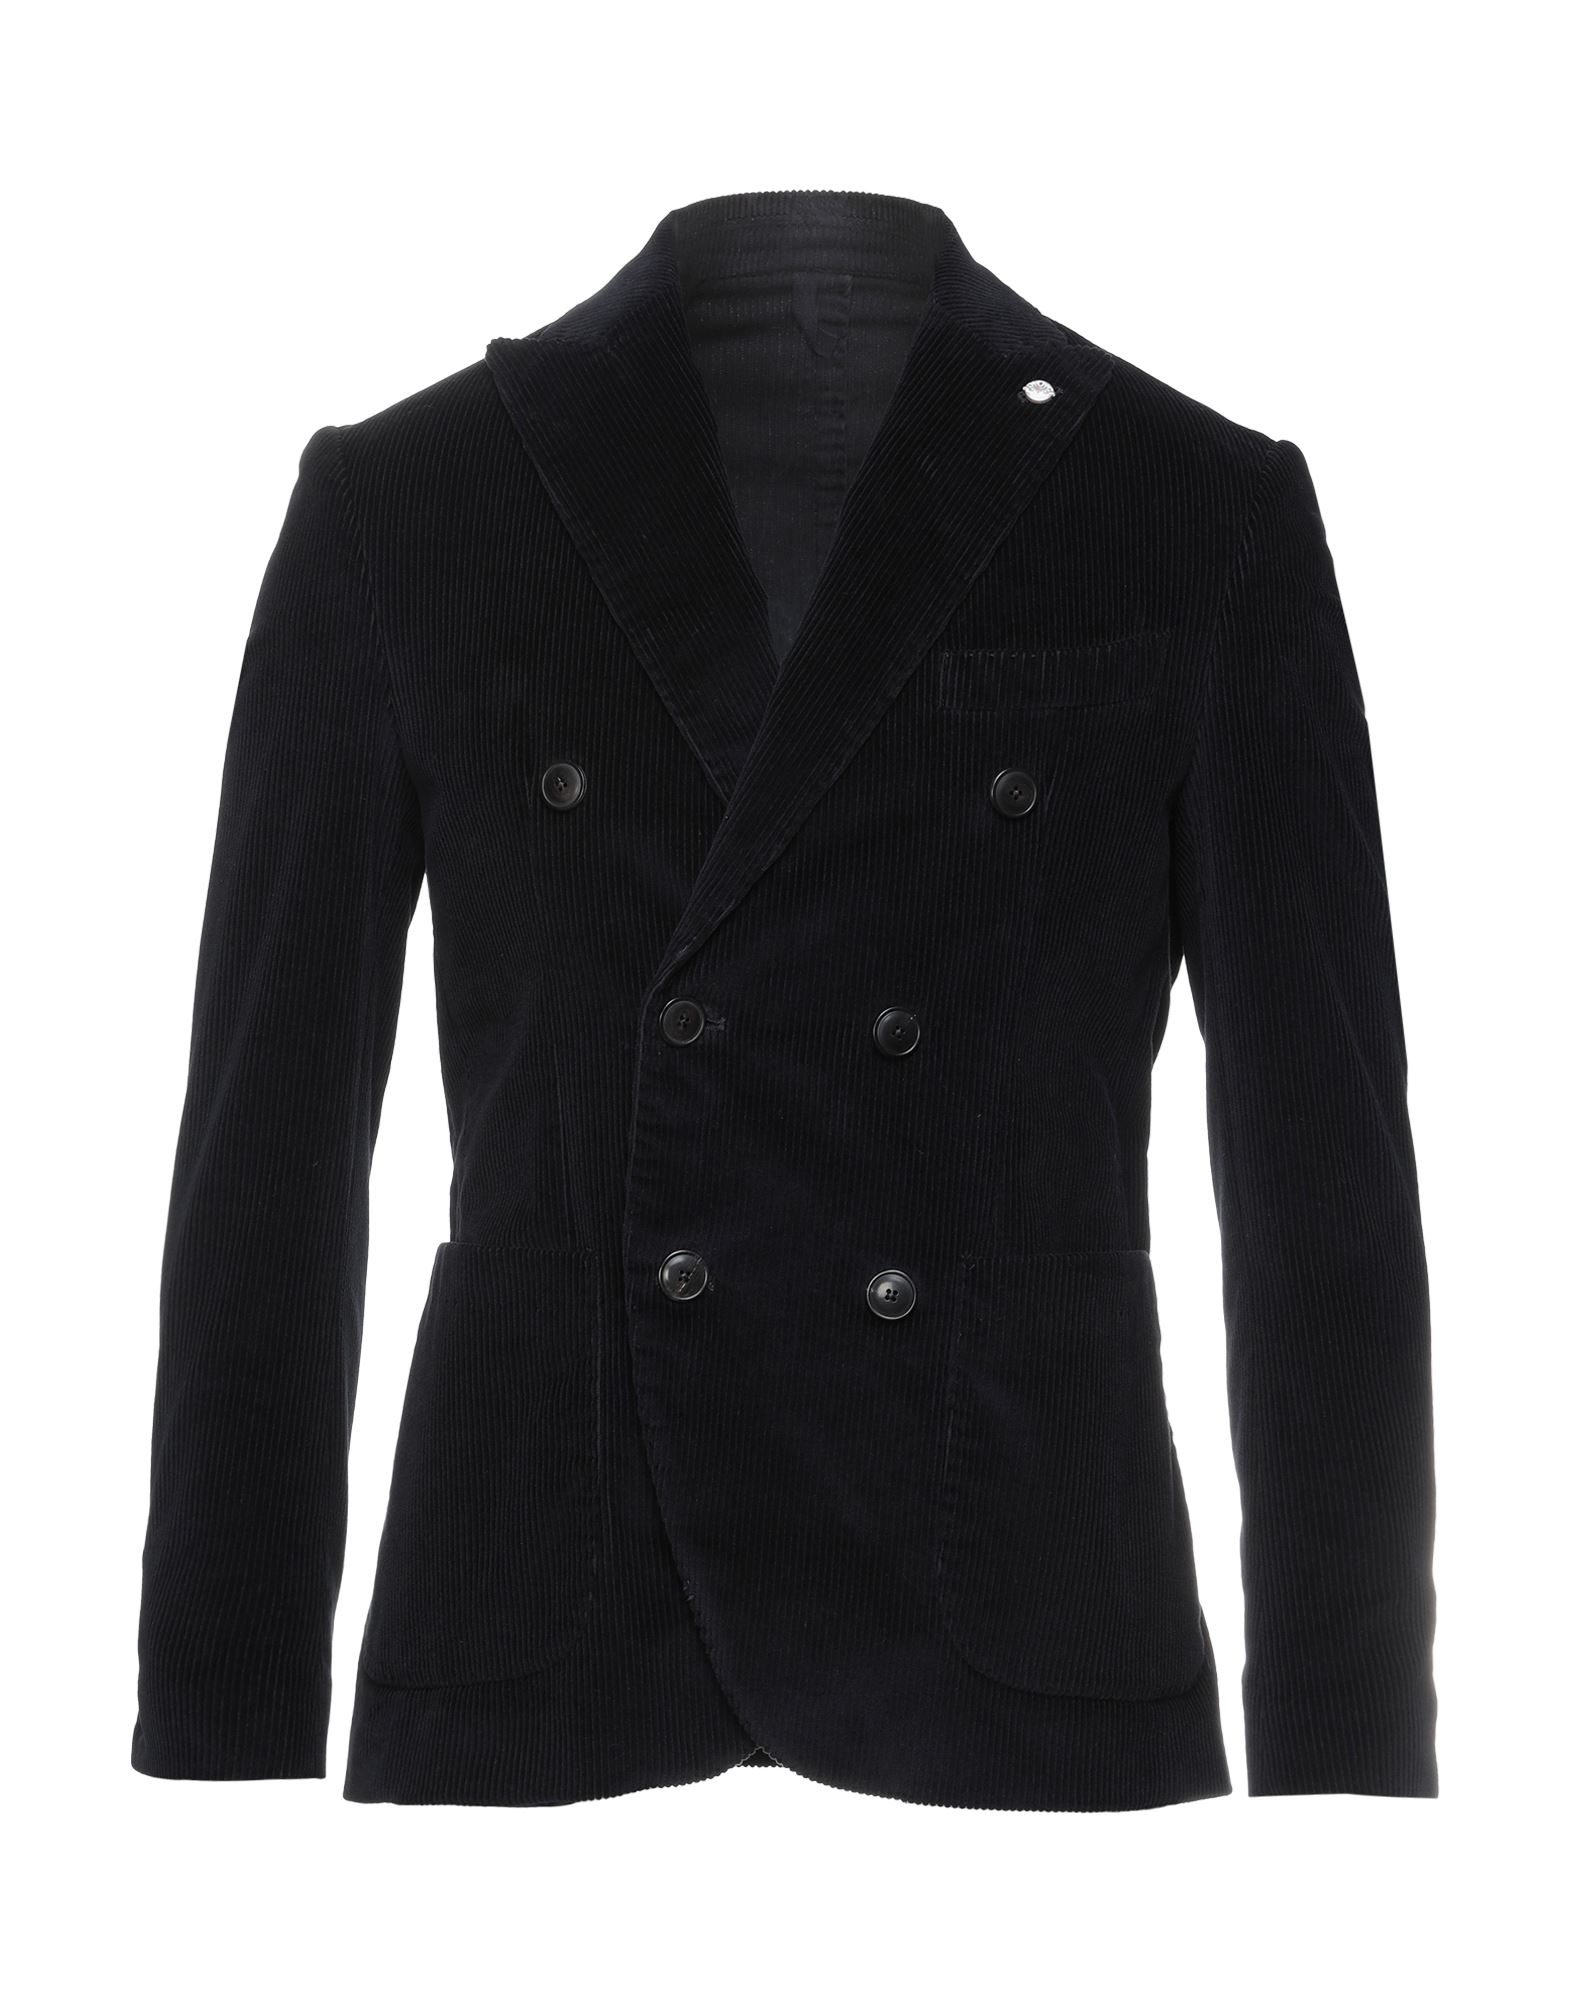 DOMENICO TAGLIENTE Suit jackets